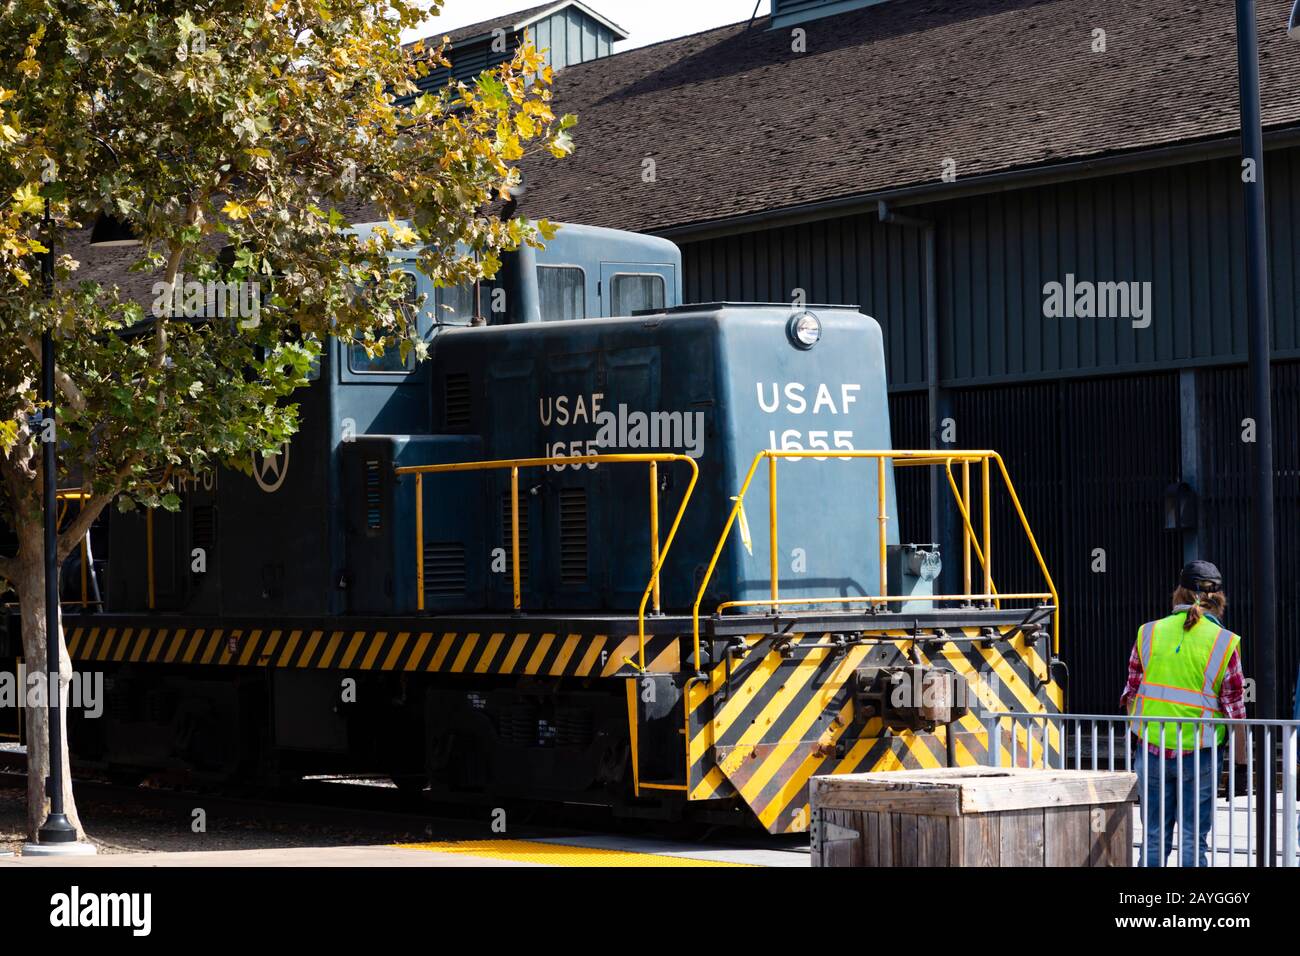 Ex USAF 1655 shunter diesel utilitaire du California State Railroad Museum avec garde volontaire. Vieille Ville, Sacramento, Californie, États-Unis. Banque D'Images